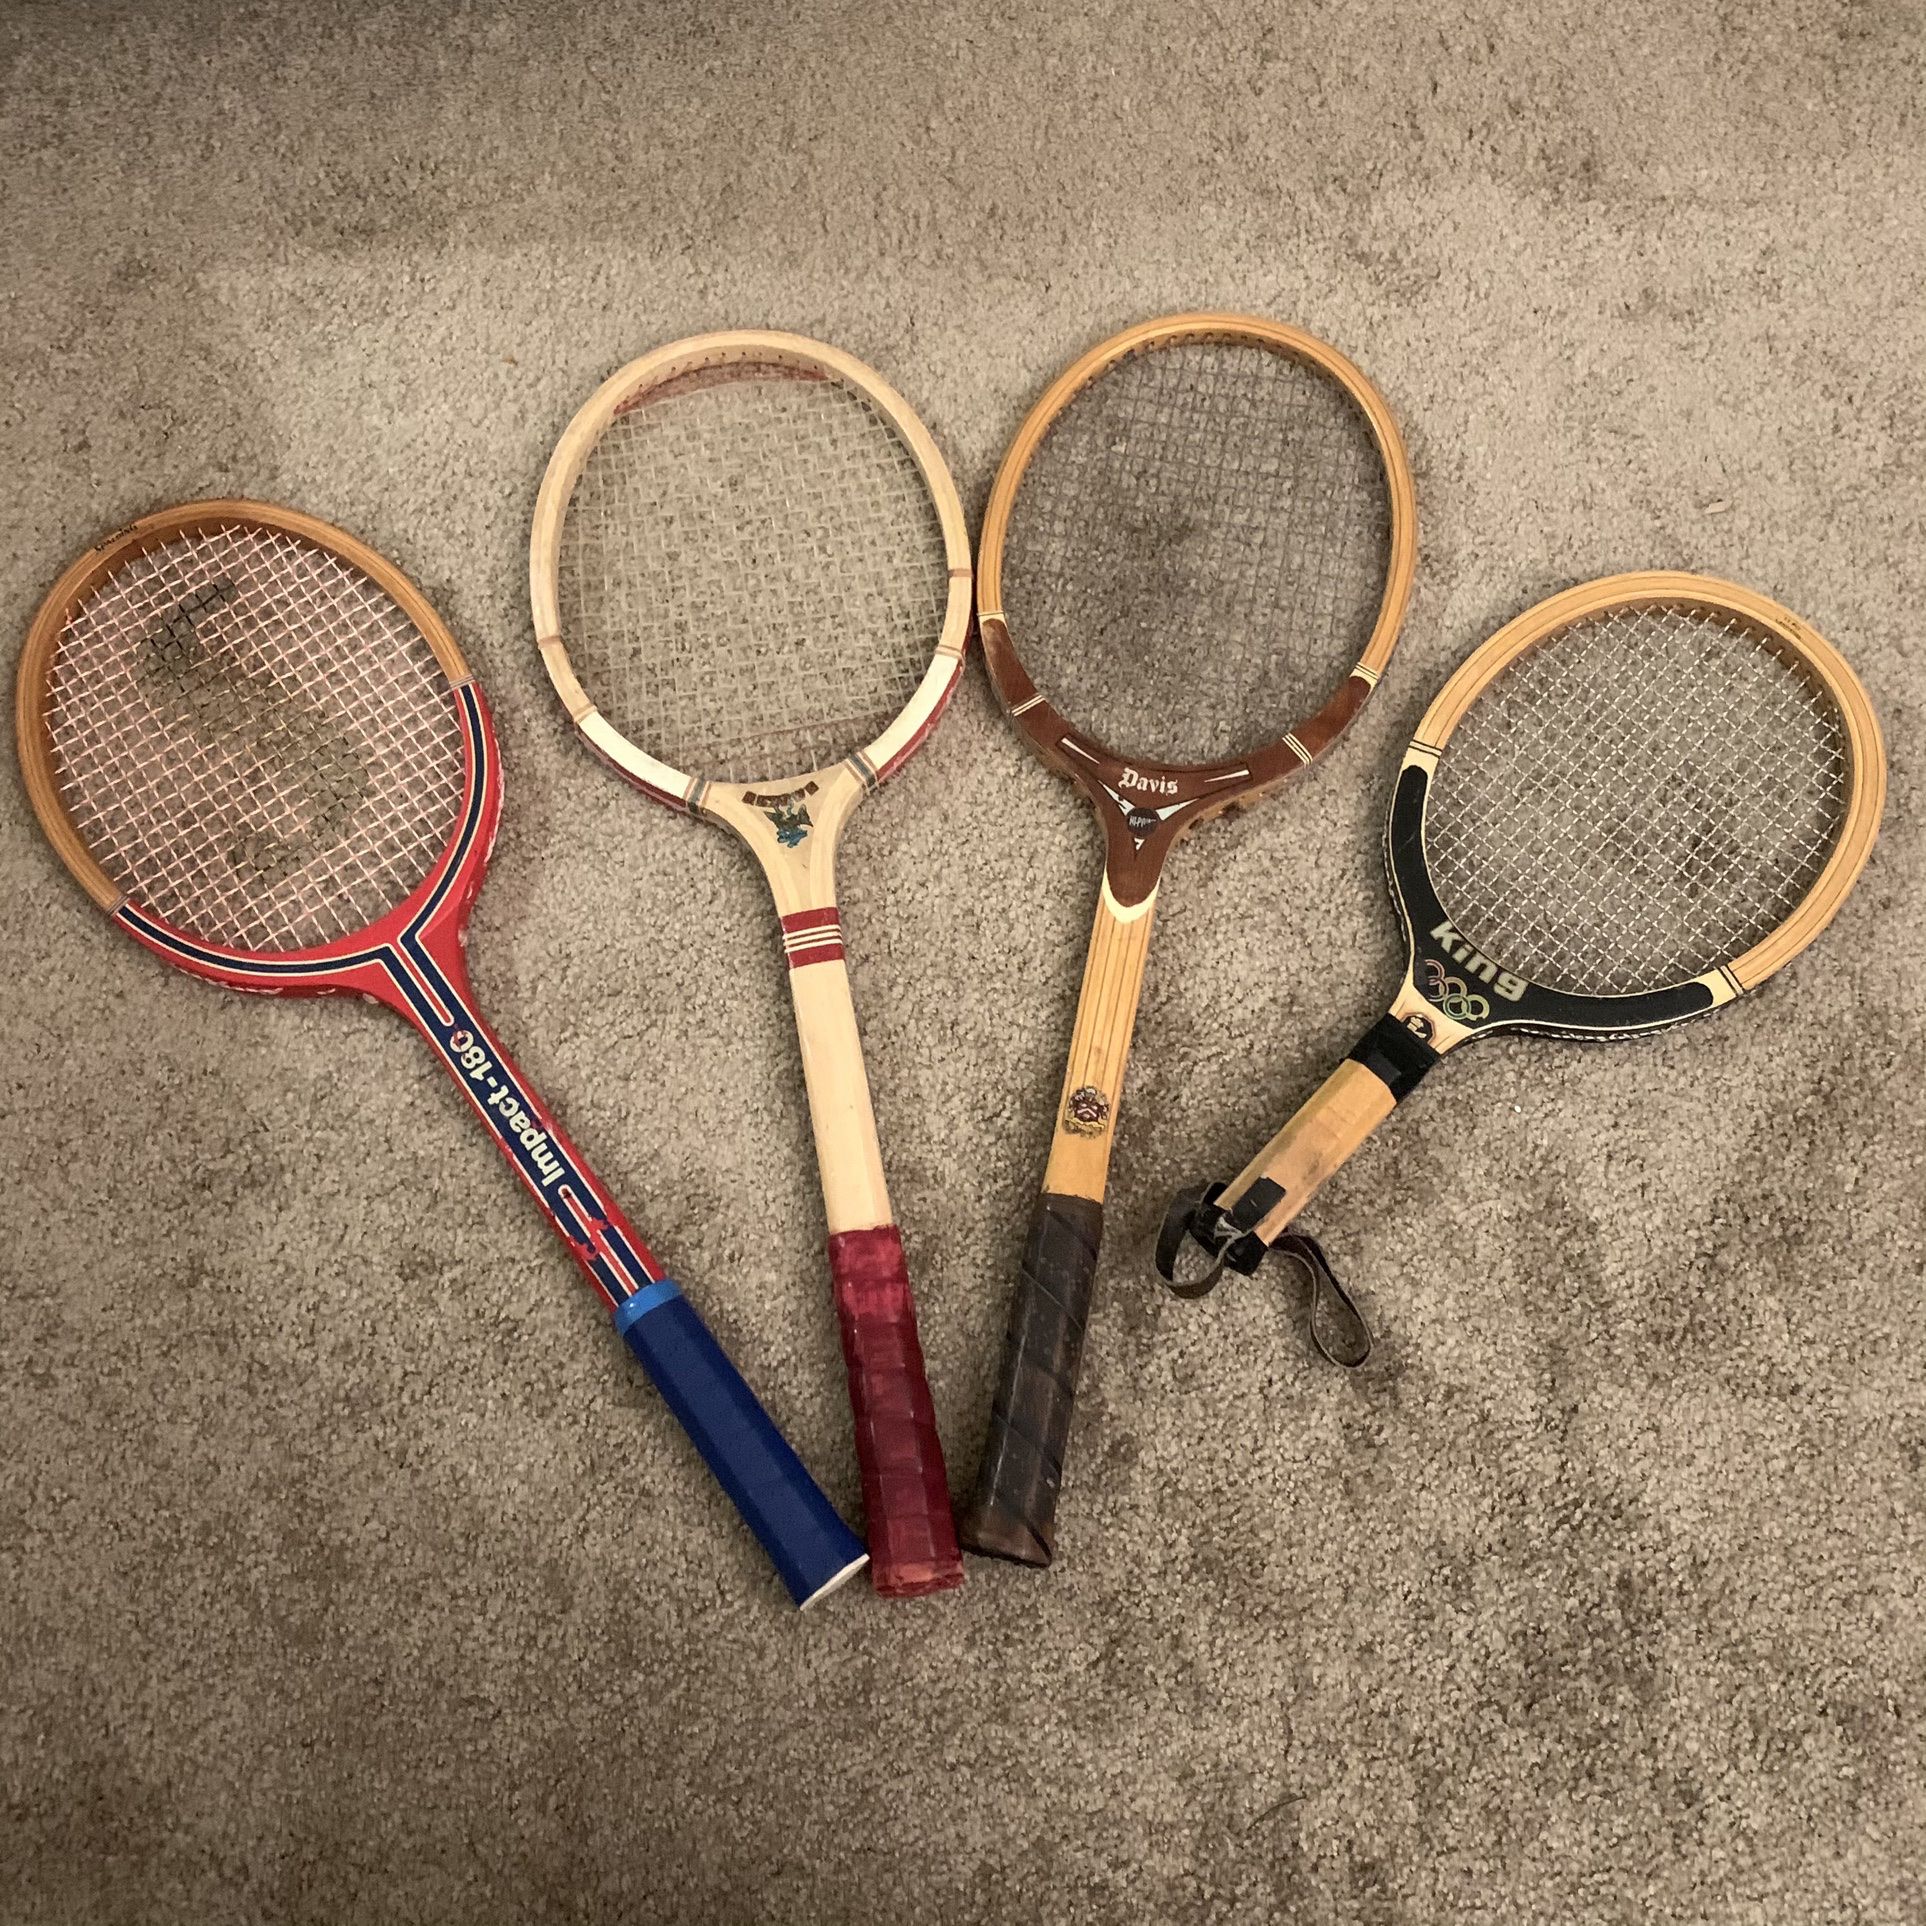 Random Lot Of Tennis Rackets